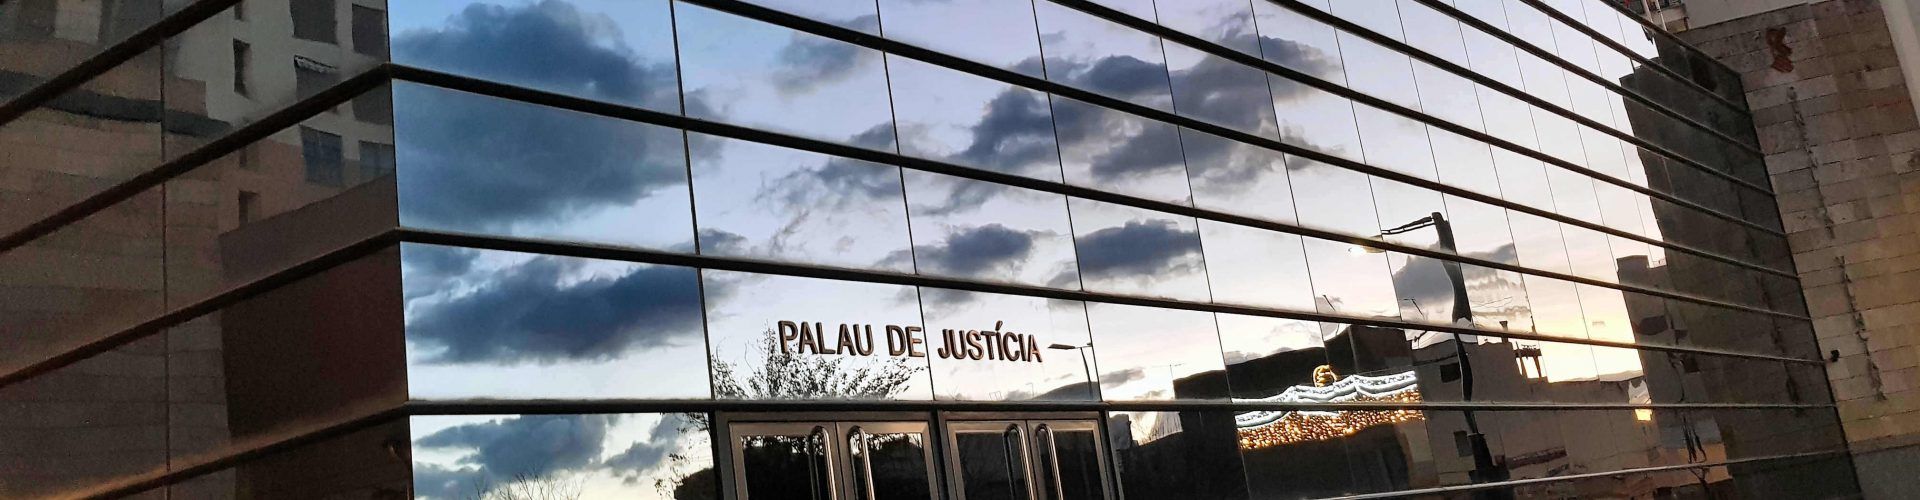 Bravo solicita al Ministerio de Justicia la creación de 15 nuevos juzgados, uno en Vinaròs